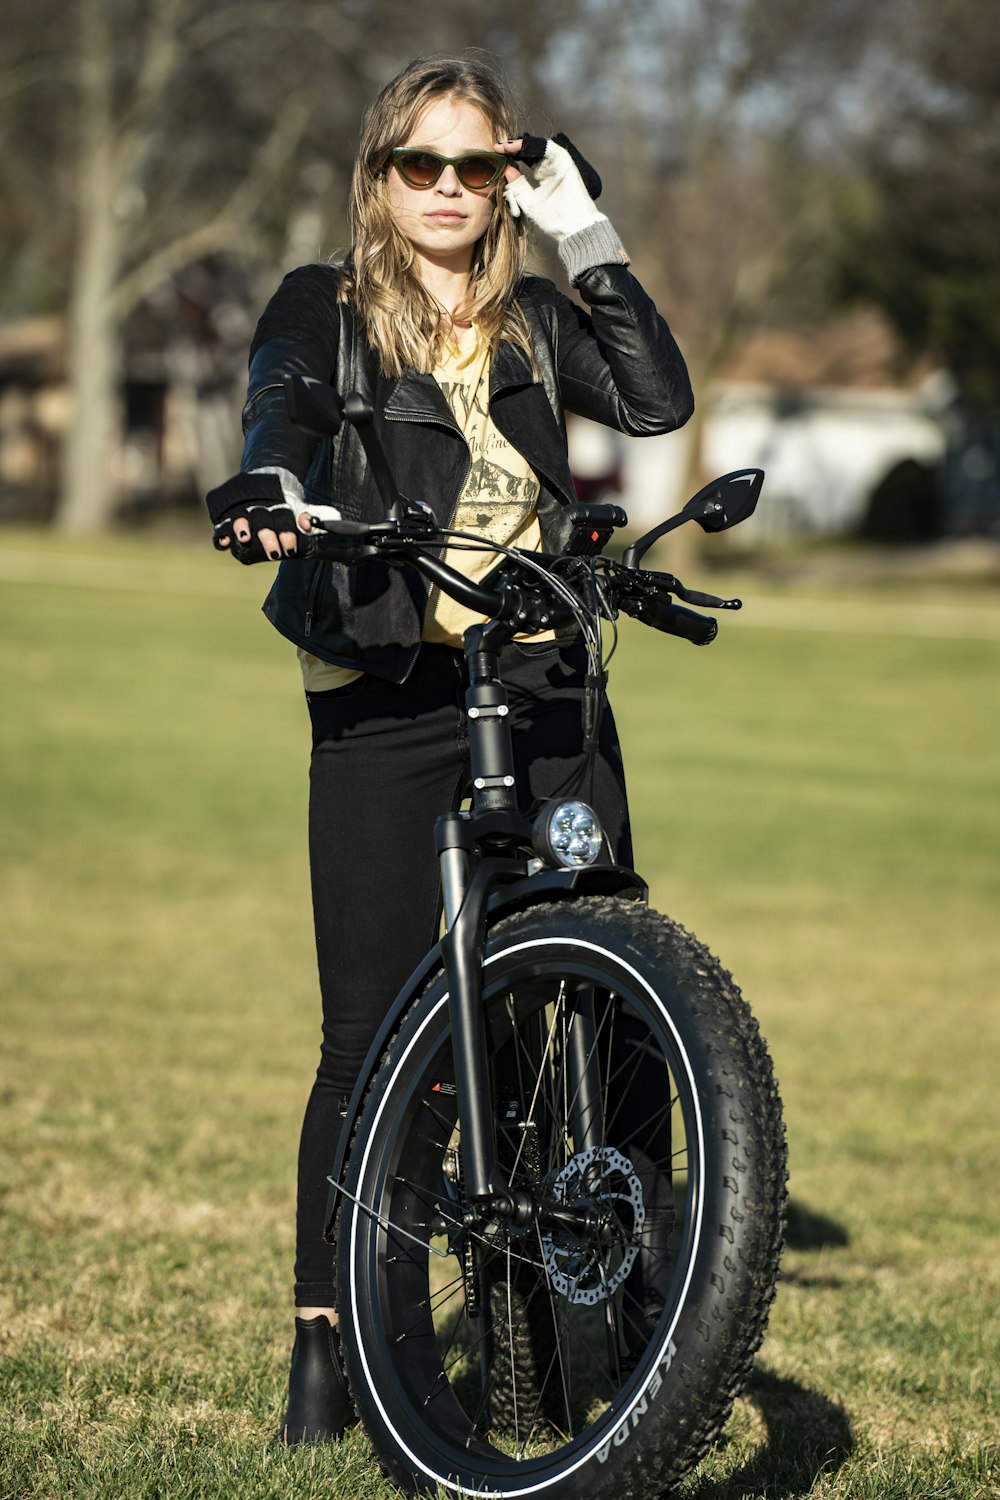 Frau in schwarzer Lederjacke fährt tagsüber schwarzes Motorrad